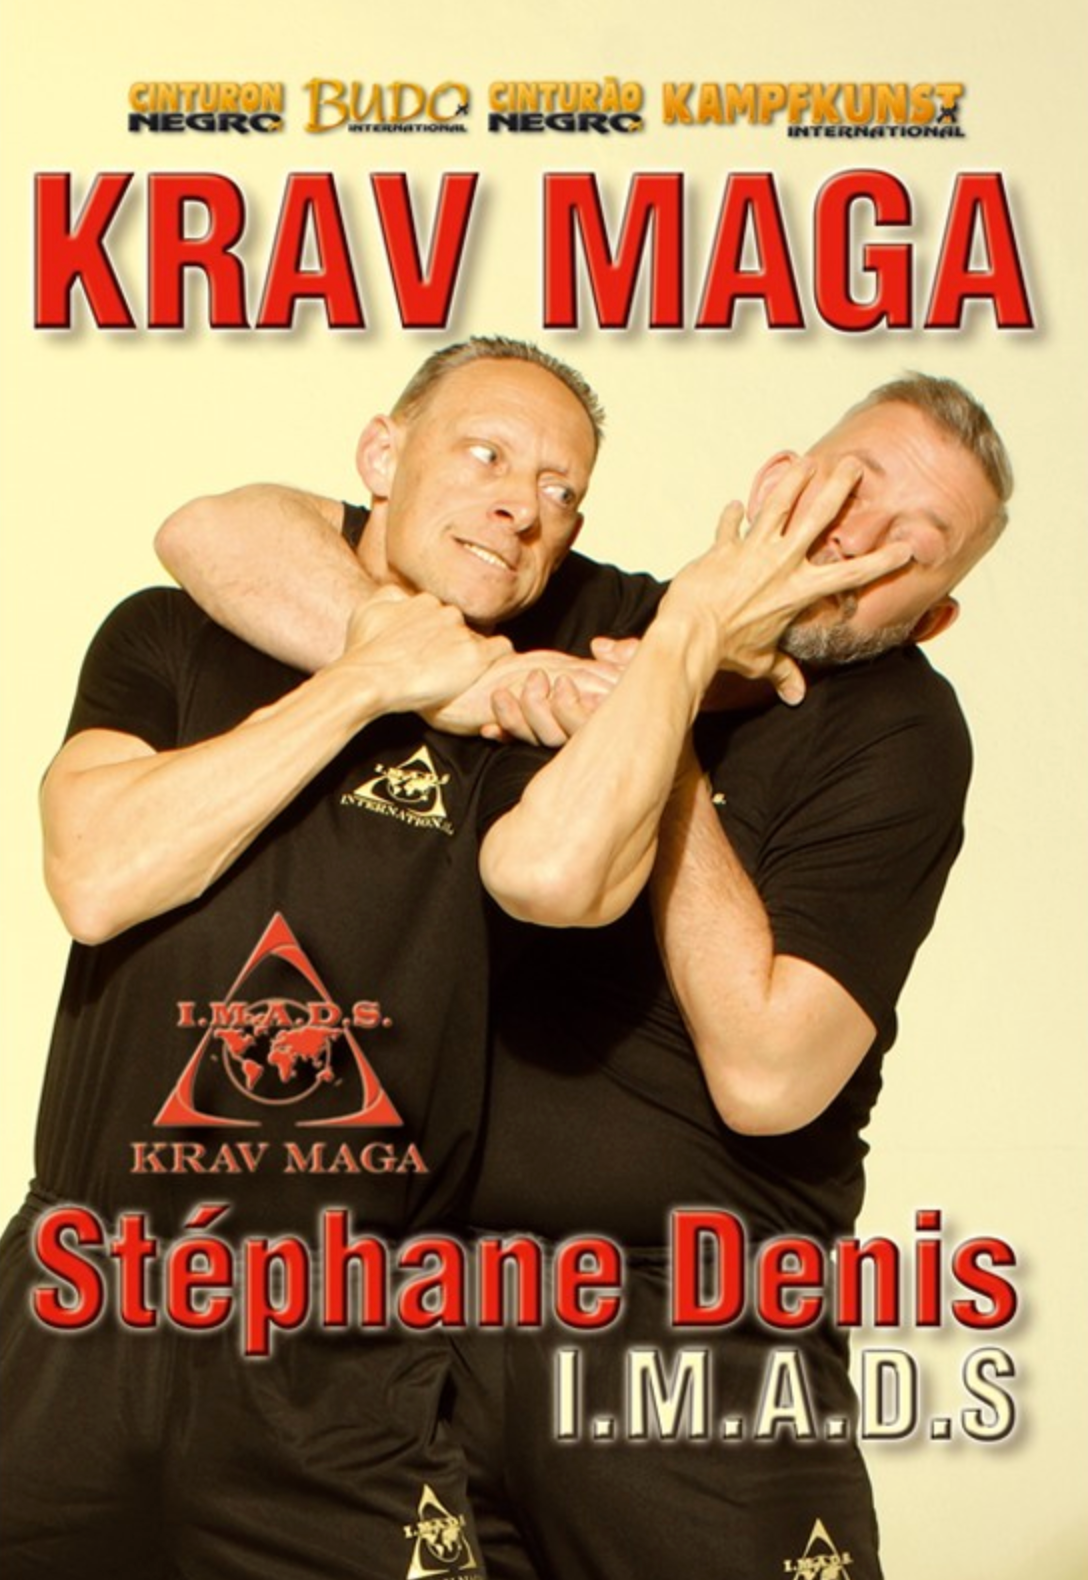 Krav Maga I.M.A.D.S. DVD by Stephane Denis - Budovideos Inc